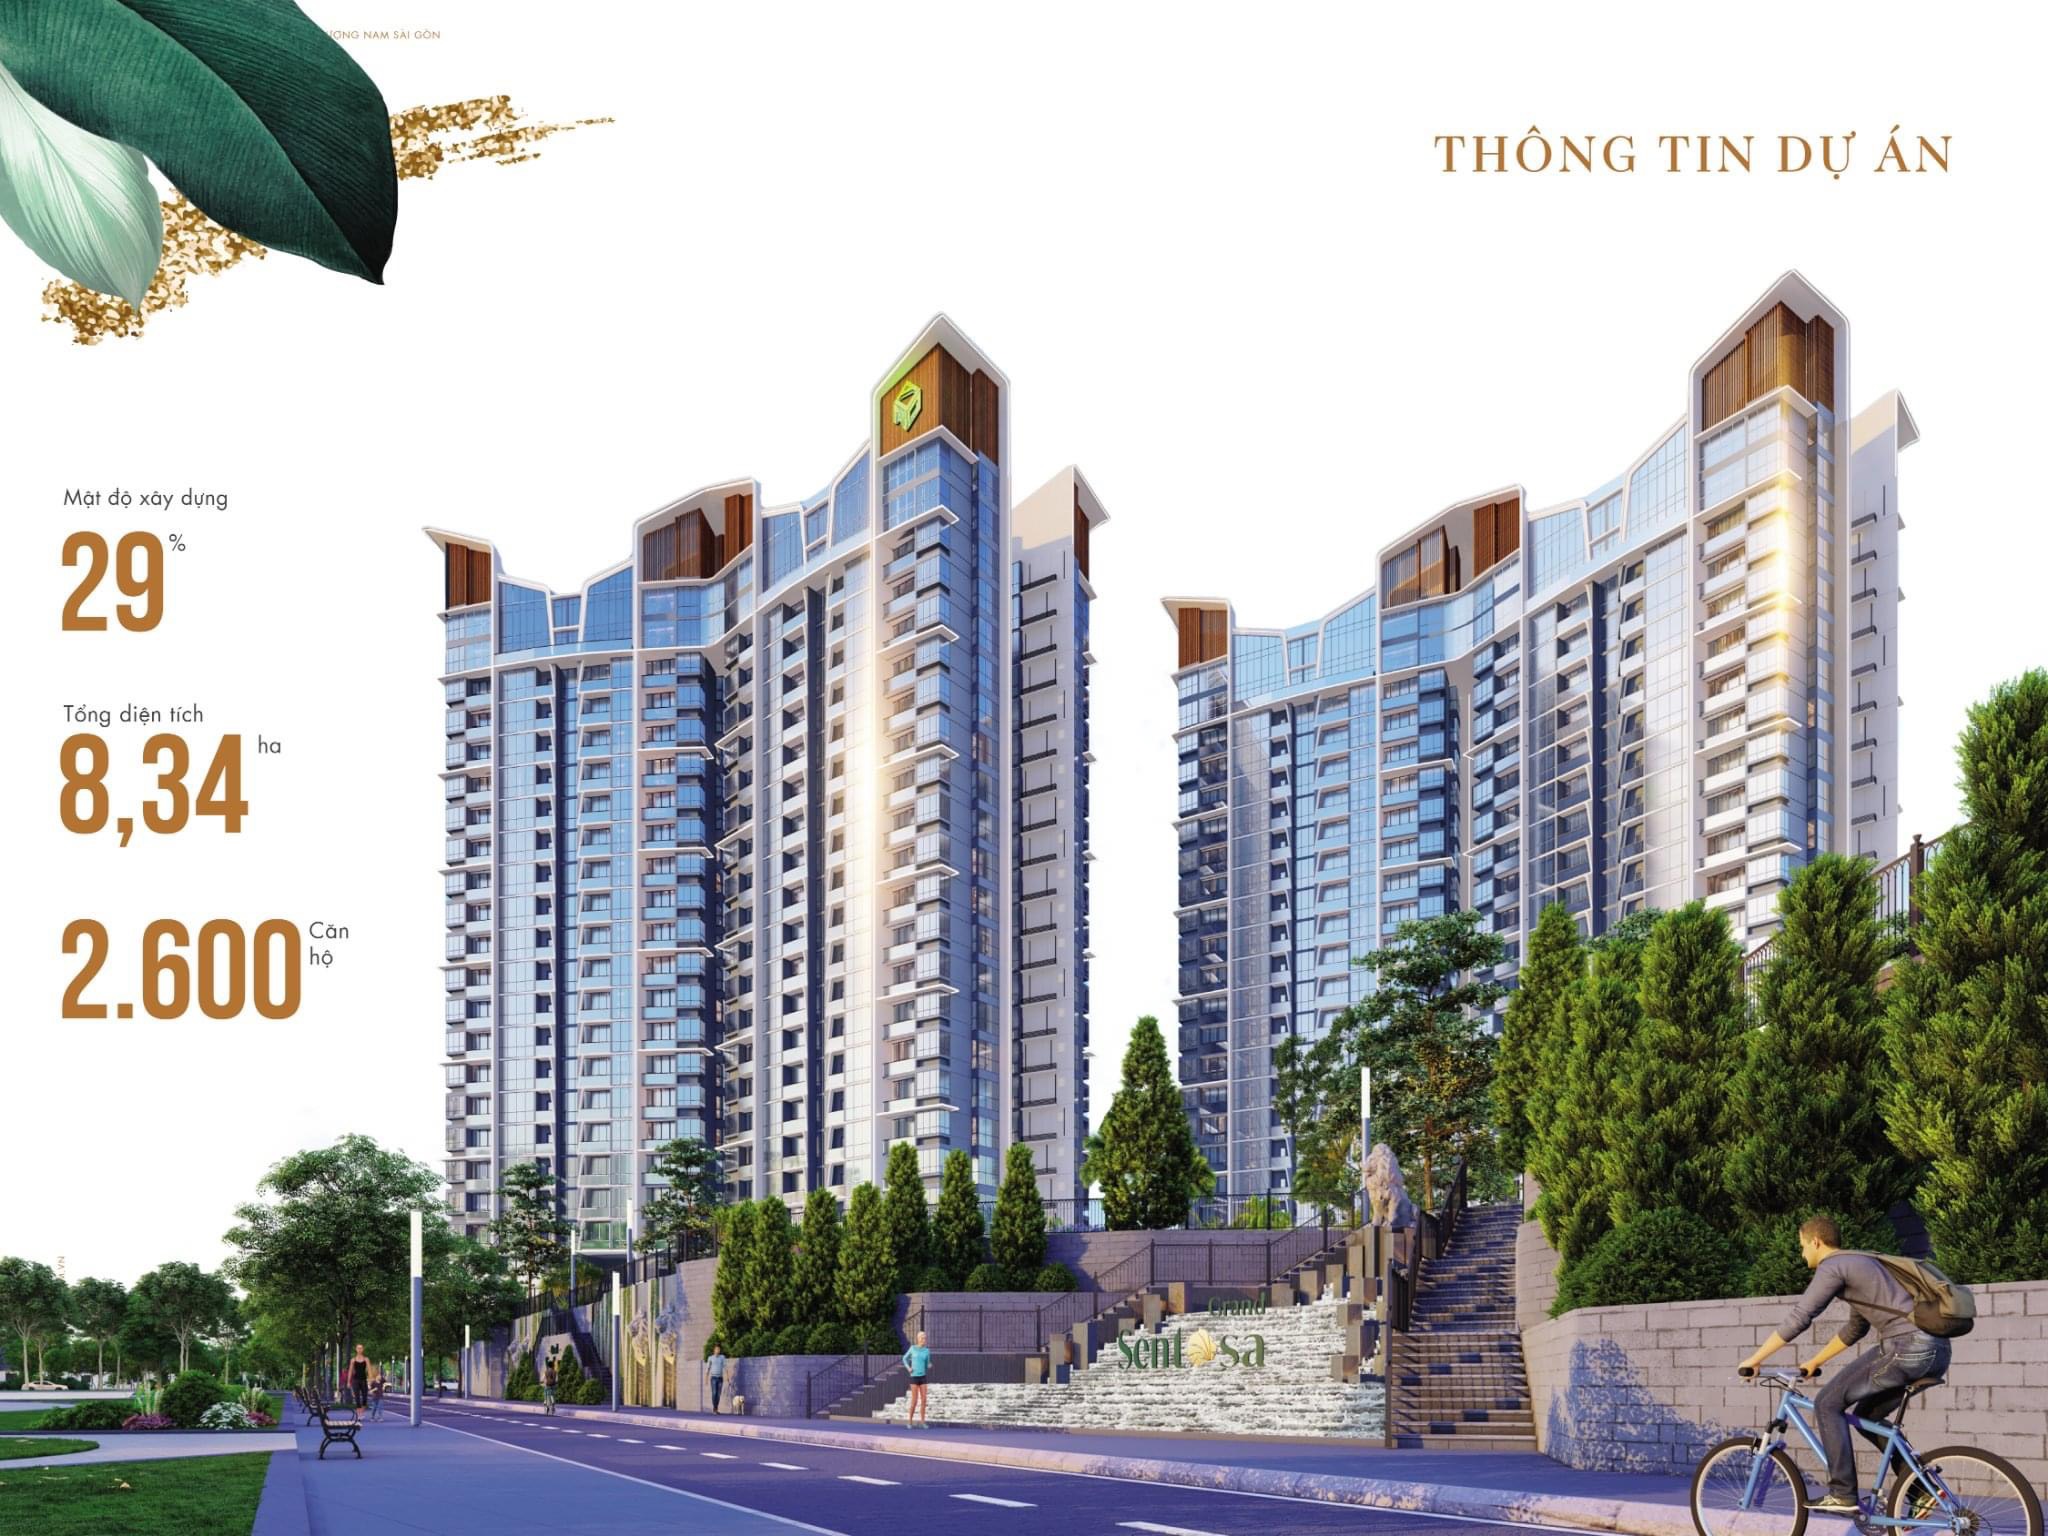 Căn hộ Nhà Bè chỉ 2 tỷ 2 / căn MT Nguyễn Hữu Thọ TT 15 % nhận nhà